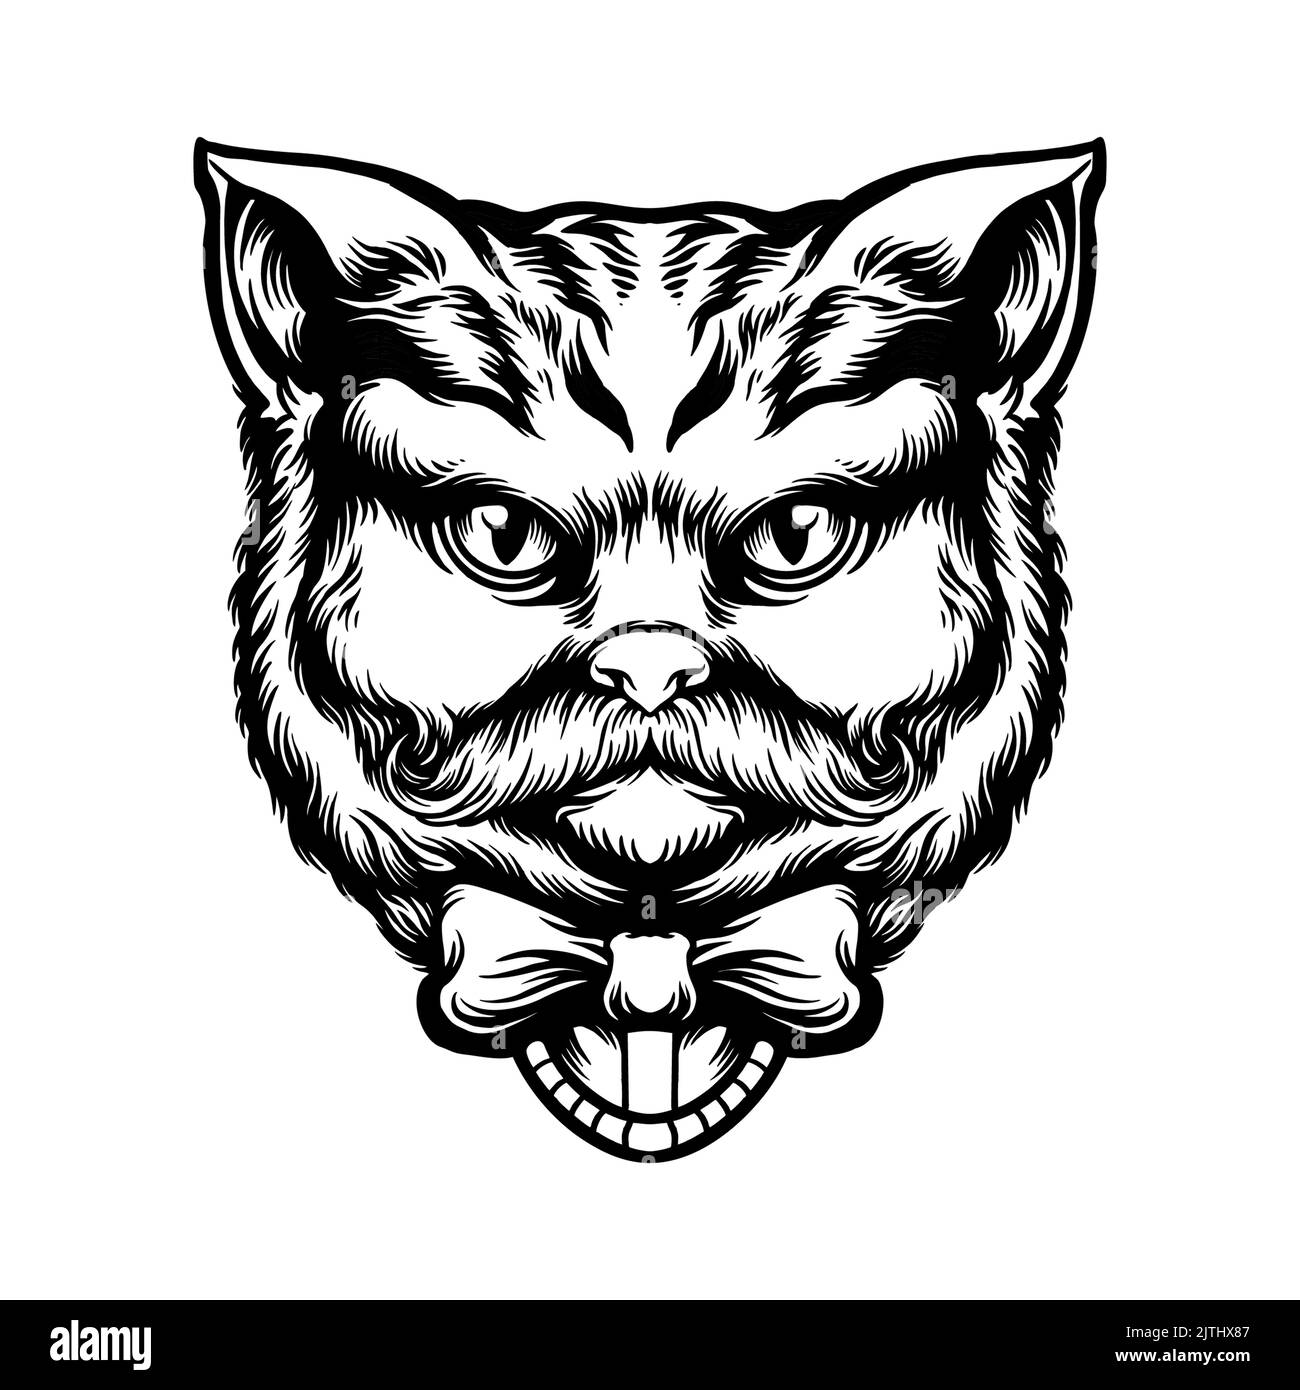 Niedliche Katze Tier Tag Silhouette Vektor-Illustrationen für Ihre Arbeit Logo, Maskottchen Merchandise T-Shirt, Aufkleber und Label-Designs, Poster, Grußkarten Stockfoto